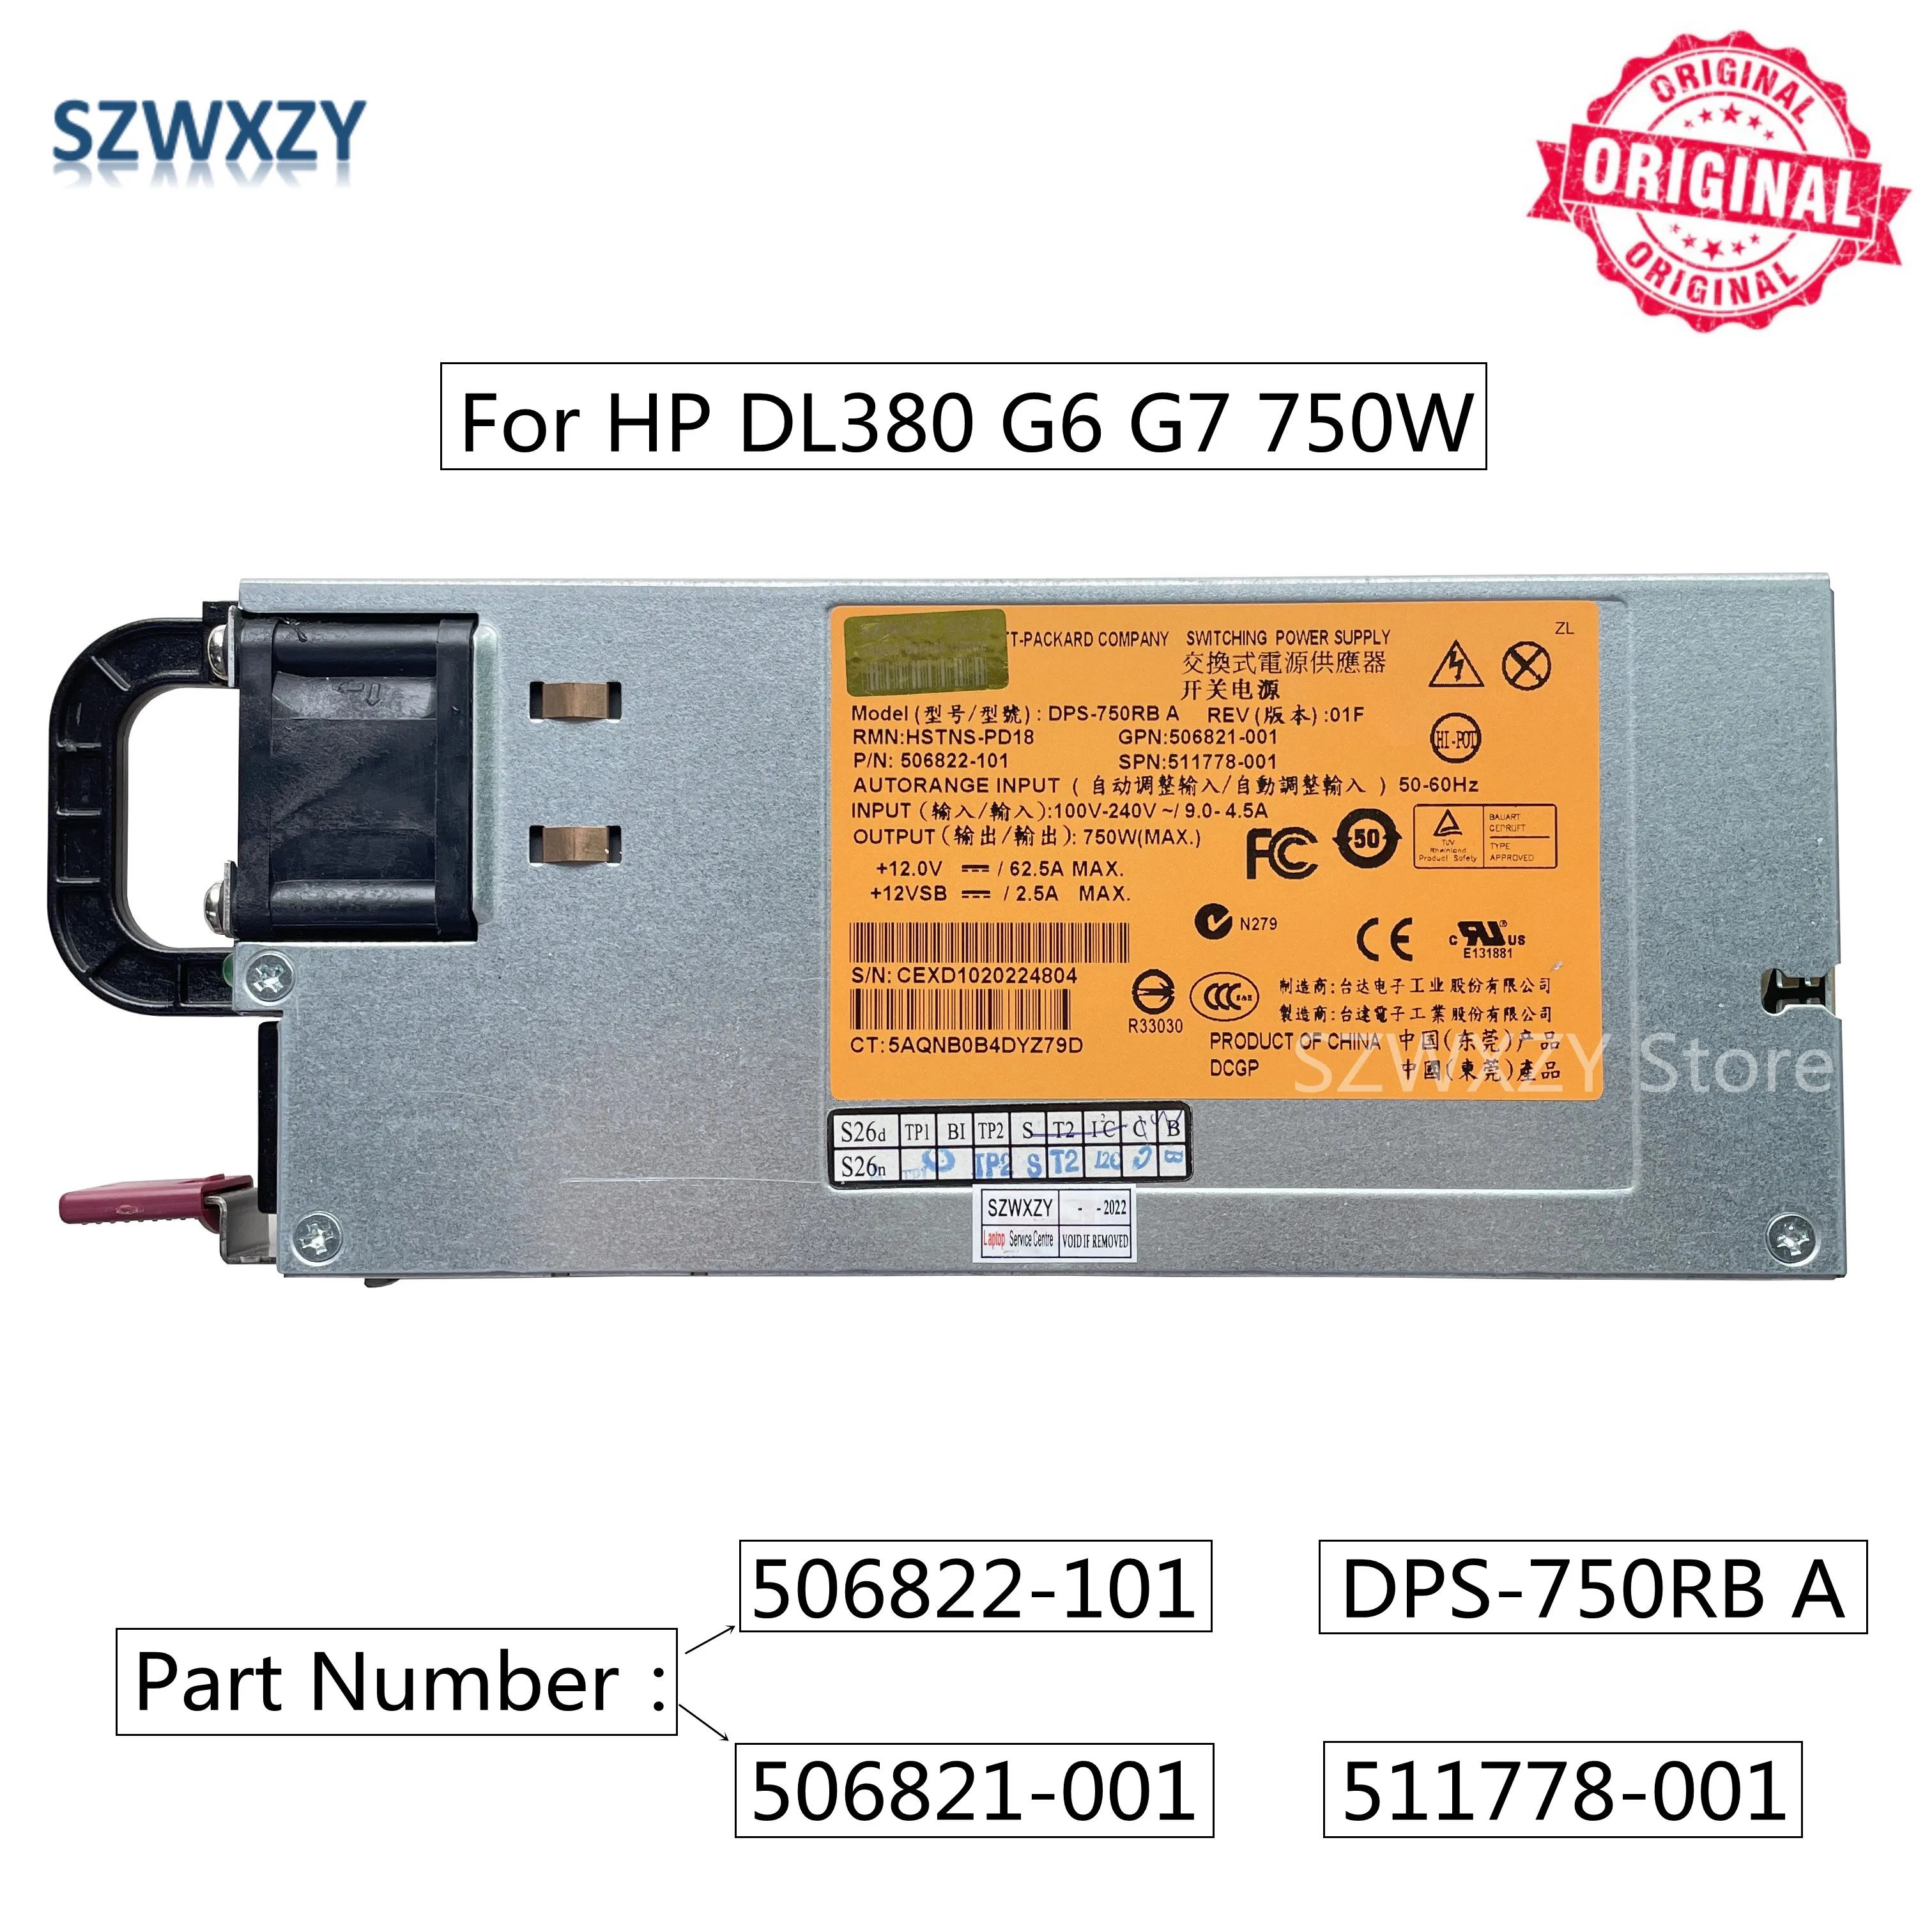 SZWXZY оригинал для HP DL380 G6 G7 750 Вт серверный источник питания DPS-750RB A 506822-101 506821-001